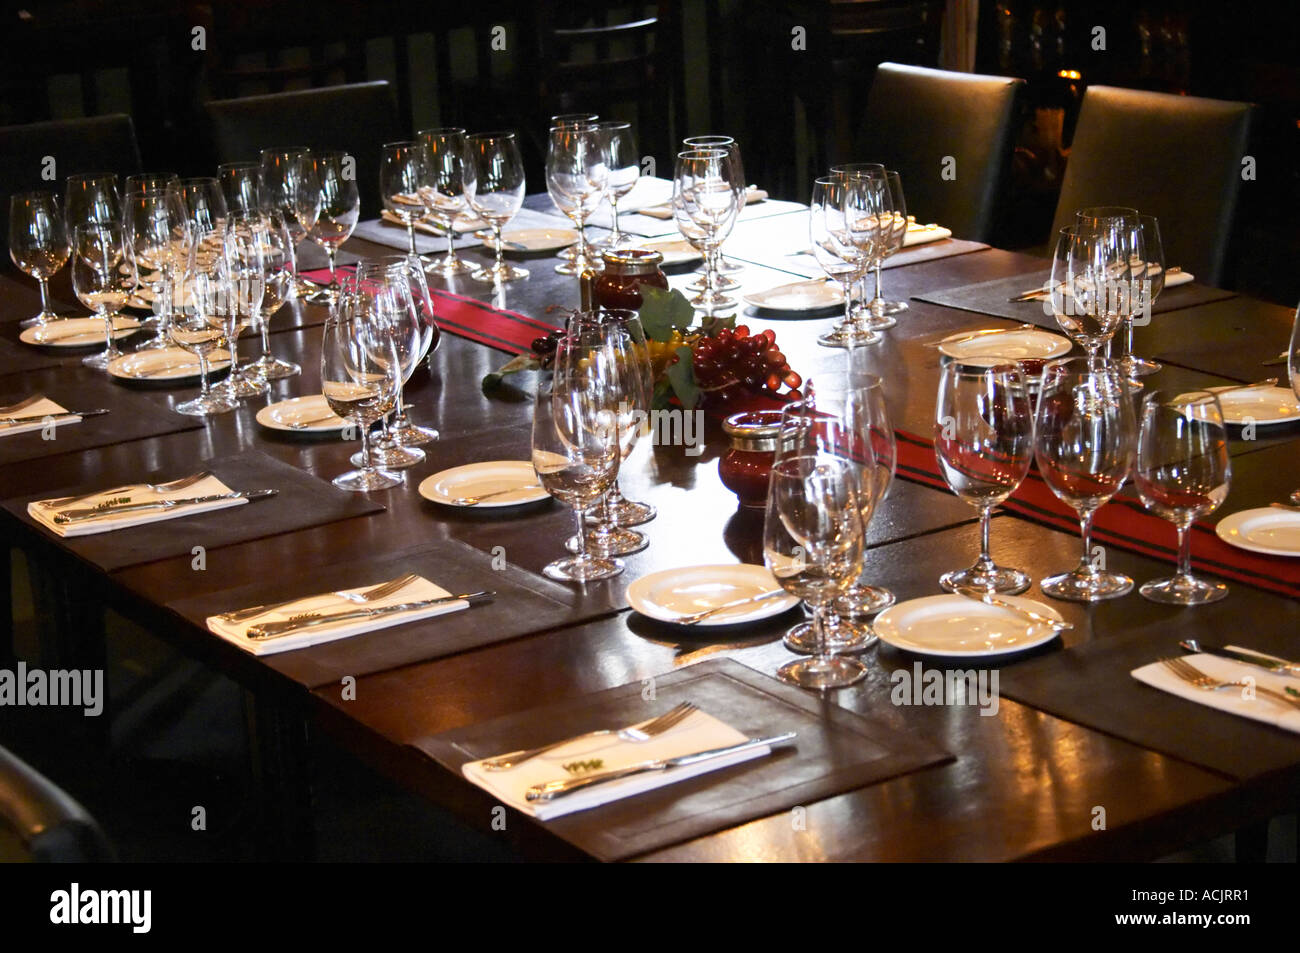 Set de table pour le déjeuner vous avec beaucoup de verres à vin de dégustation et des couteaux, fourchettes et autres ustensiles. Le restaurant O'Farrell, Acassuso, Buenos Aires Argentine, Amérique du Sud Banque D'Images